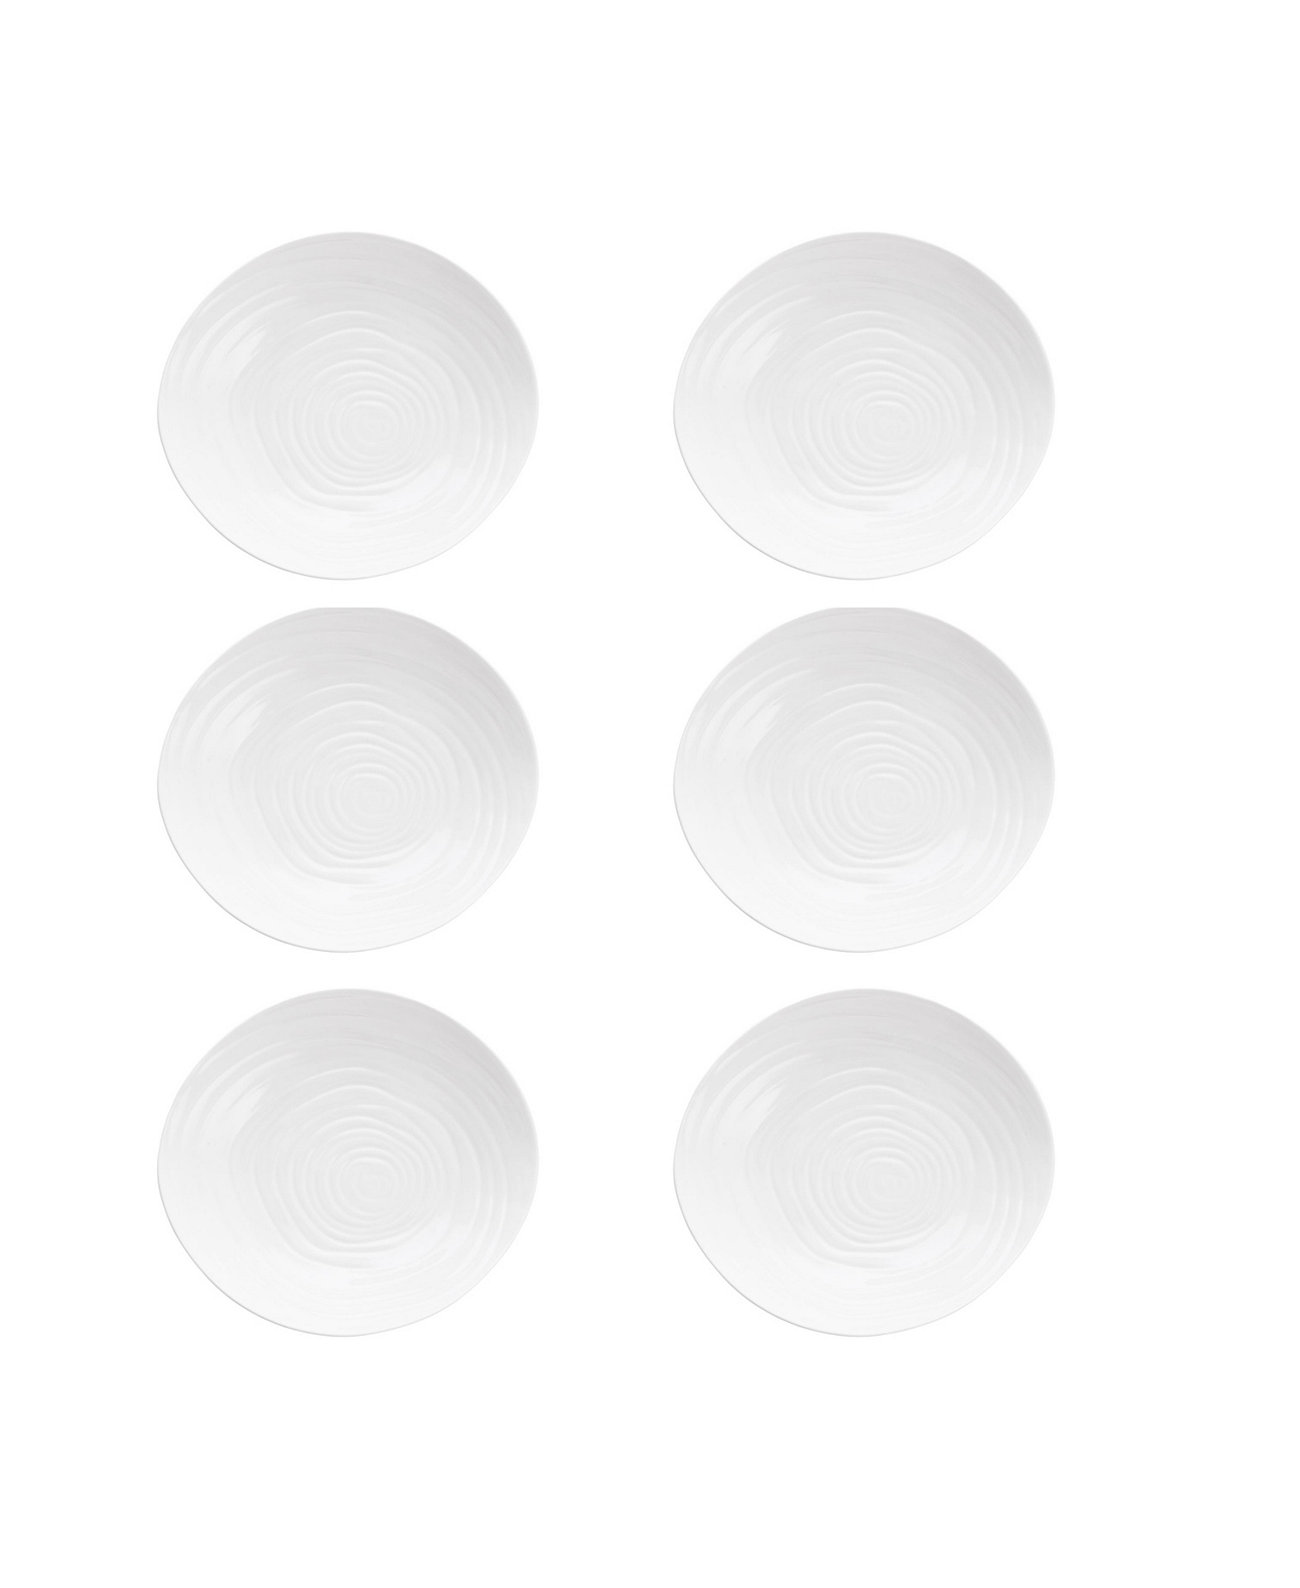 Меламиновые суповые тарелки Playa Blanca, 9,25 дюйма, набор/6 шт. Fortessa